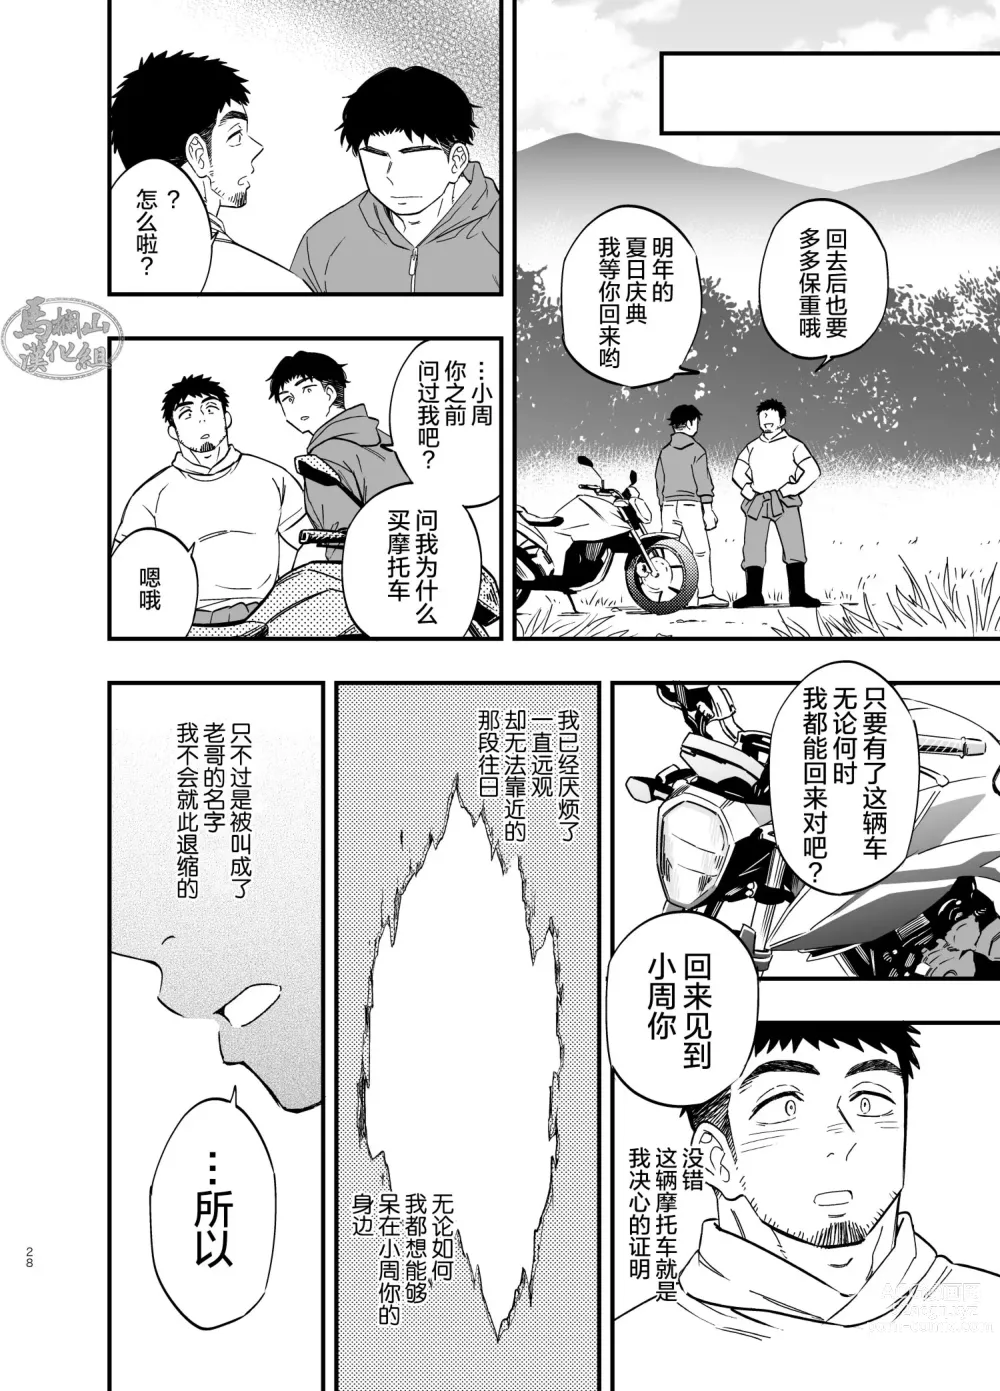 Page 29 of manga 穴